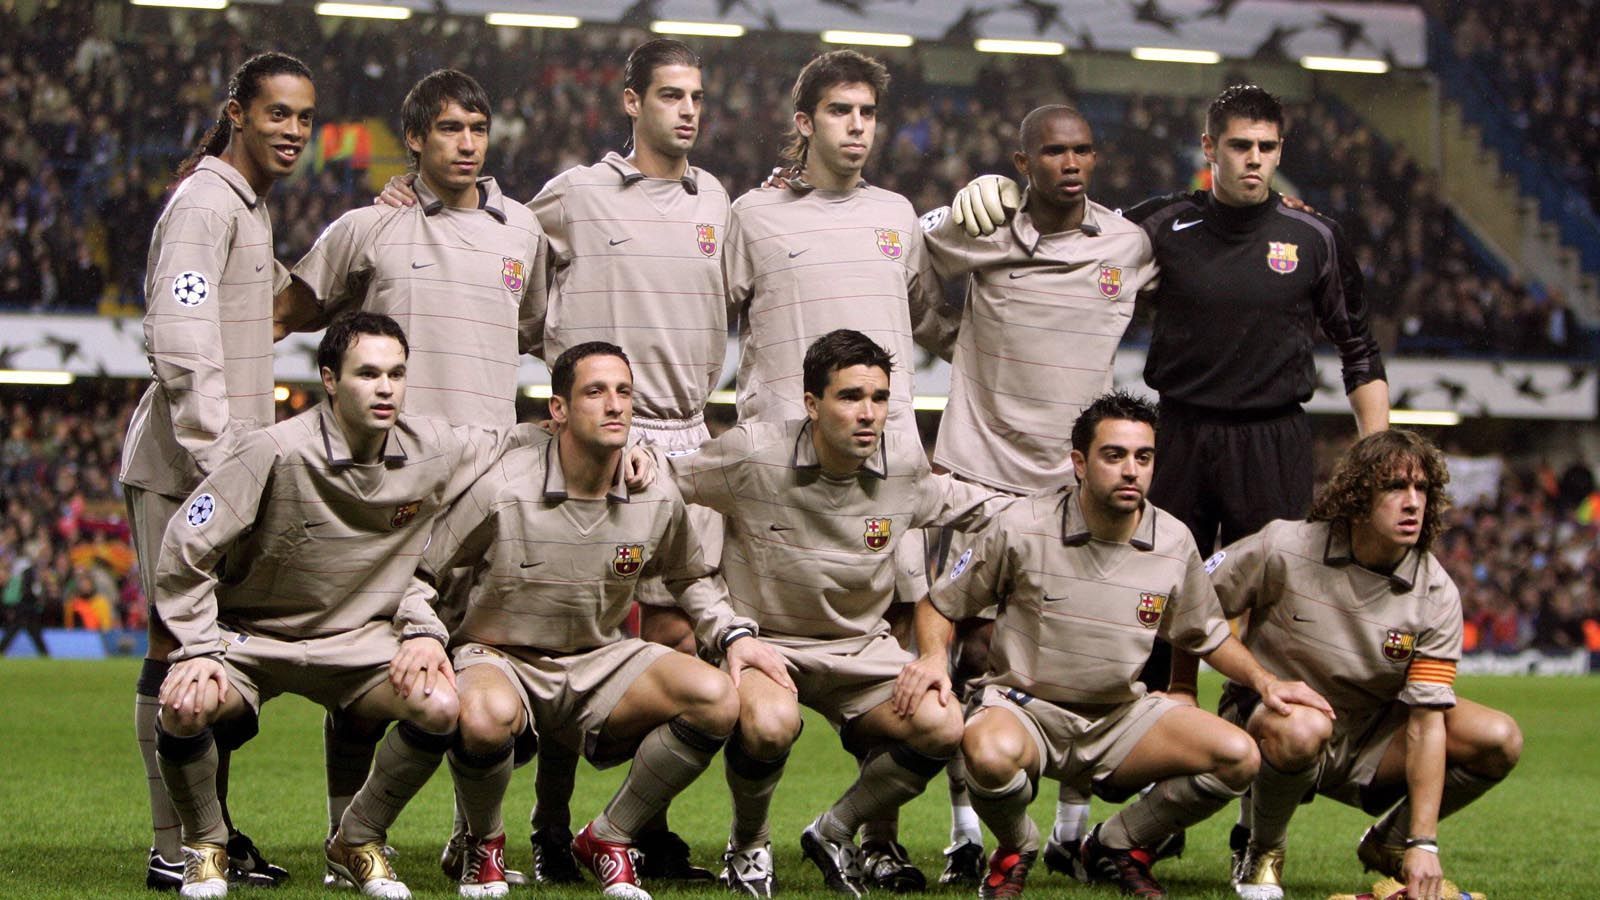 
                <strong>Barca mit Star-Auswahl und "schicken" Trikots</strong><br>
                Doch die prägenden Figuren im Barca-Spiel vor Messi sind Ronaldinho (oben links), Xavi (unten, 2 v. r.) und Carlos Puyol (unten rechts). Damals spielt Barca noch ohne Trikotsponsor, wie es in den Vereinsstatuten vorgesehen ist. Die Trikotfarbe ist natürlich Geschmackssache. 
              